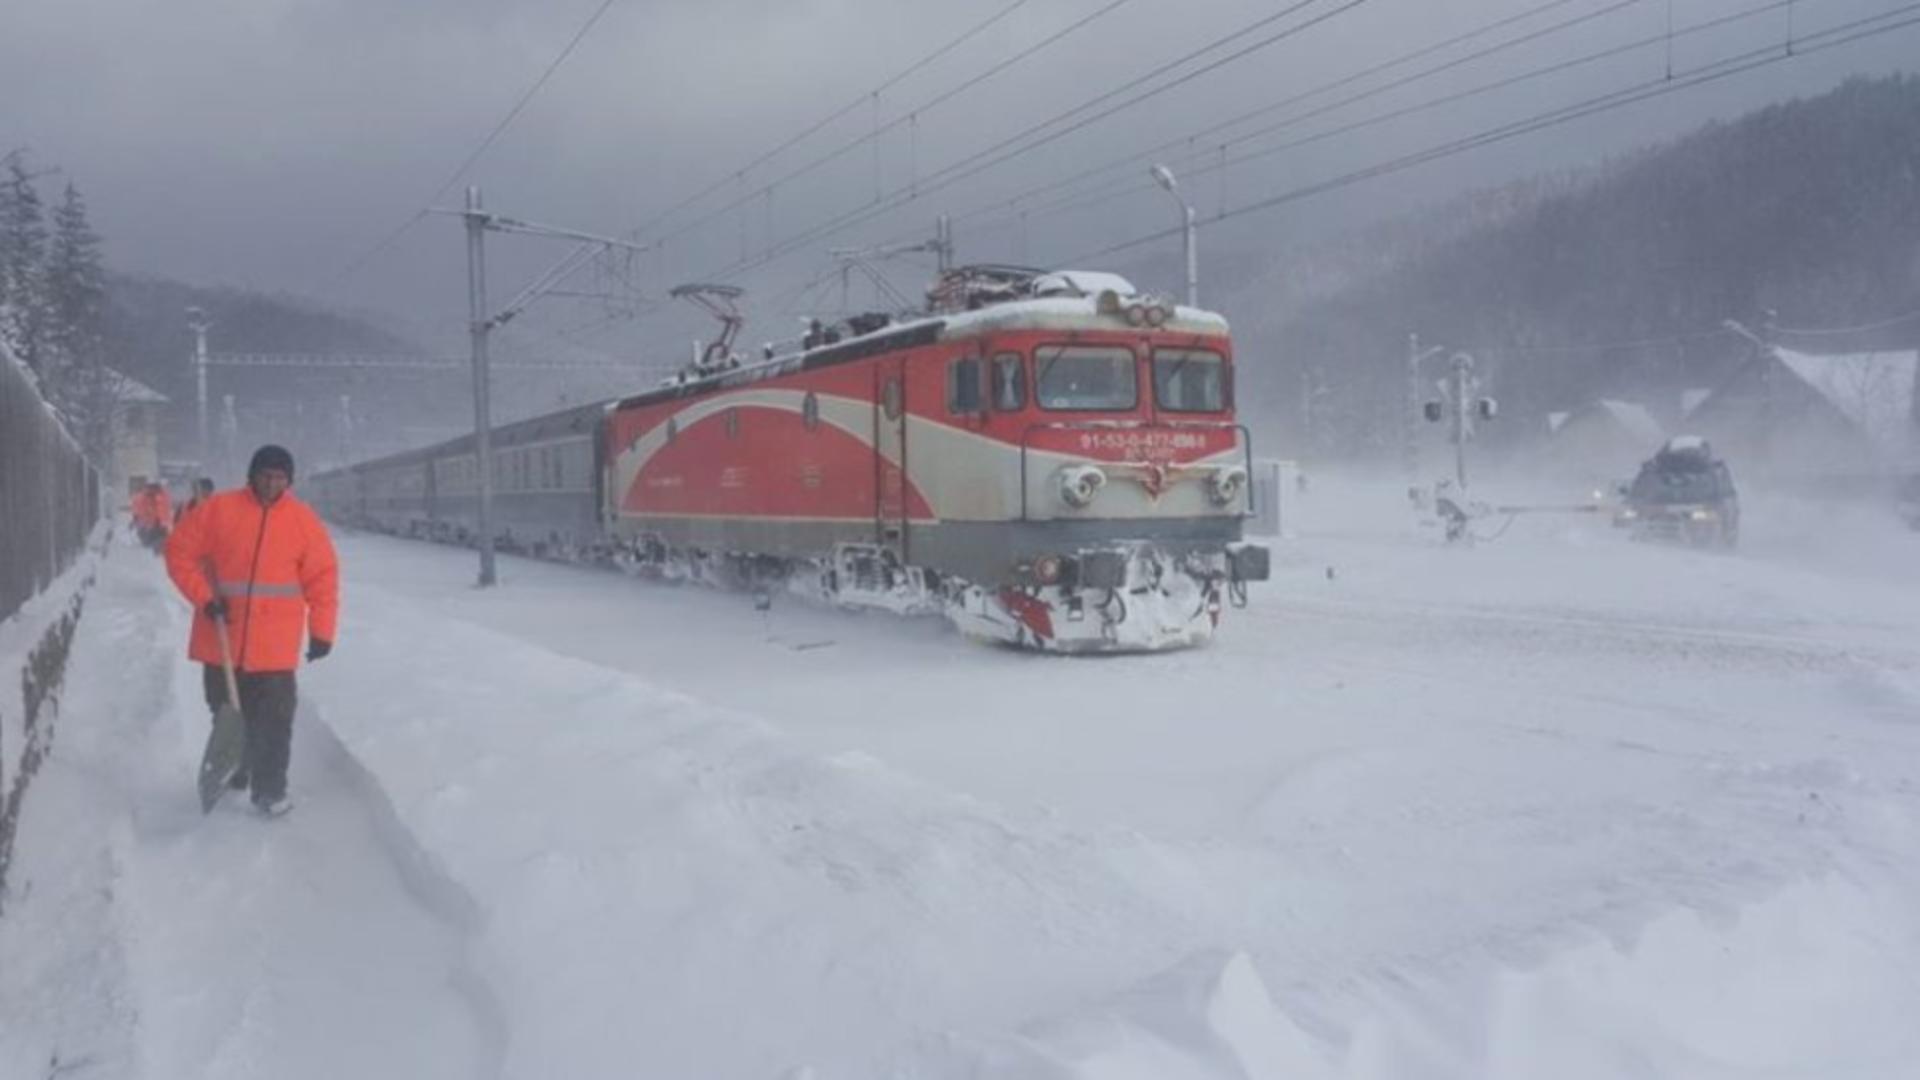 Vremea rea pune mari probleme: trenuri întârziate, șine rupte din cauza temperaturilor scăzute. Ce rute sunt afectate